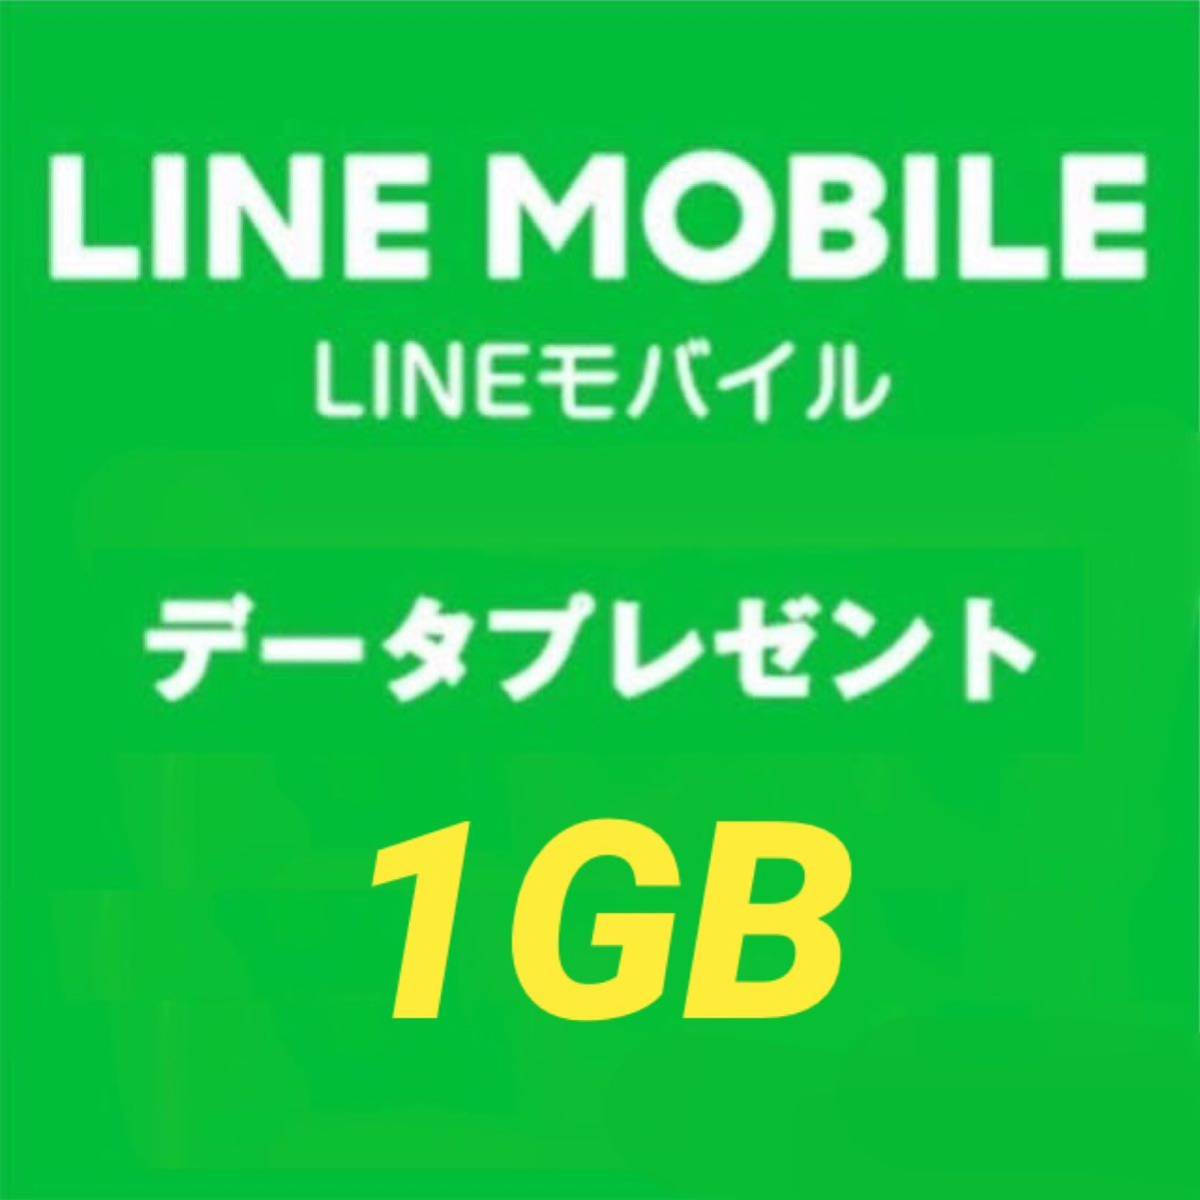 LINEモバイル データプレゼント 3月 1GBの画像1